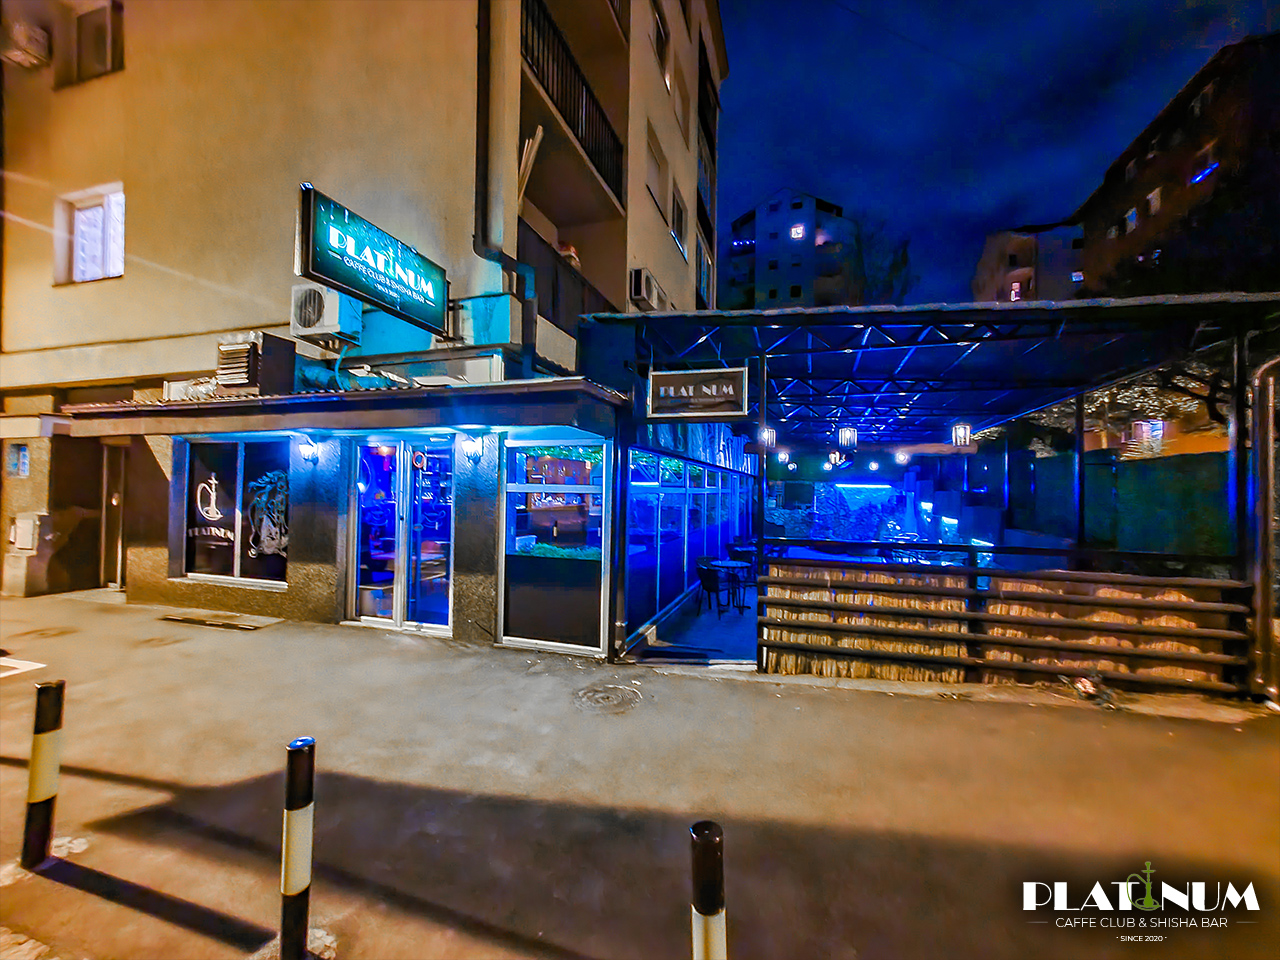 Slika 1 - PLATINUM CAFFE CLUB & SHISHA BAR Kafe barovi i klubovi Beograd